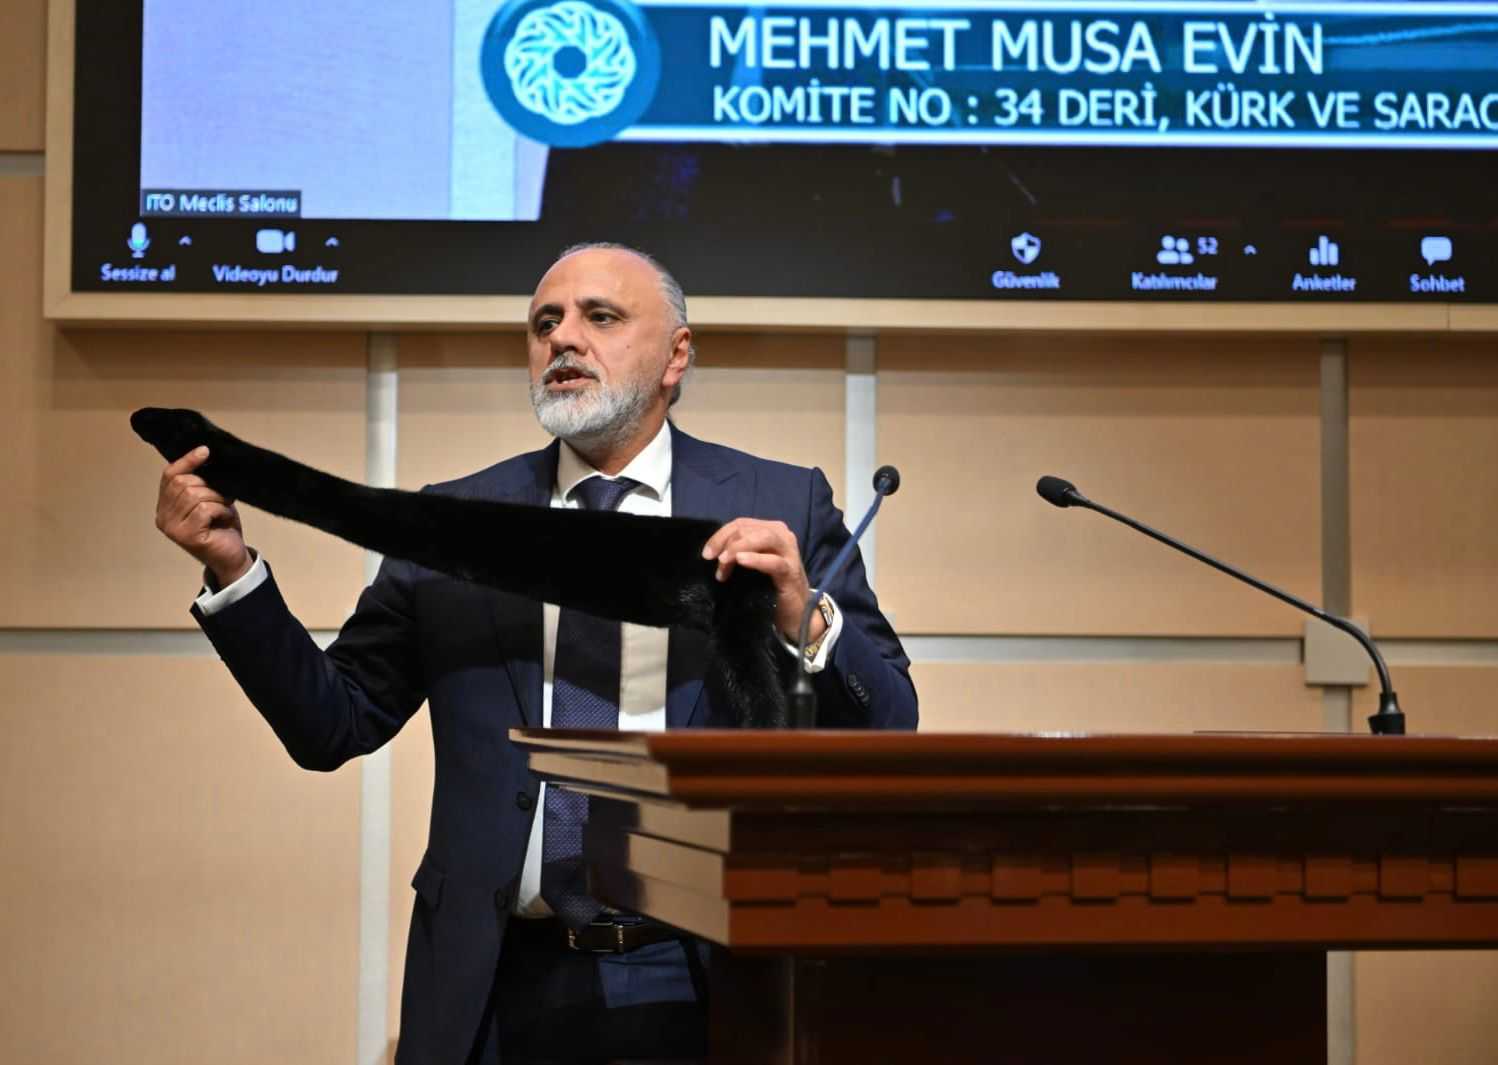 İstanbul Ticaret Odası Meclis üyesi Musa Evin deri sektörünün sorunlarını dile getirdi